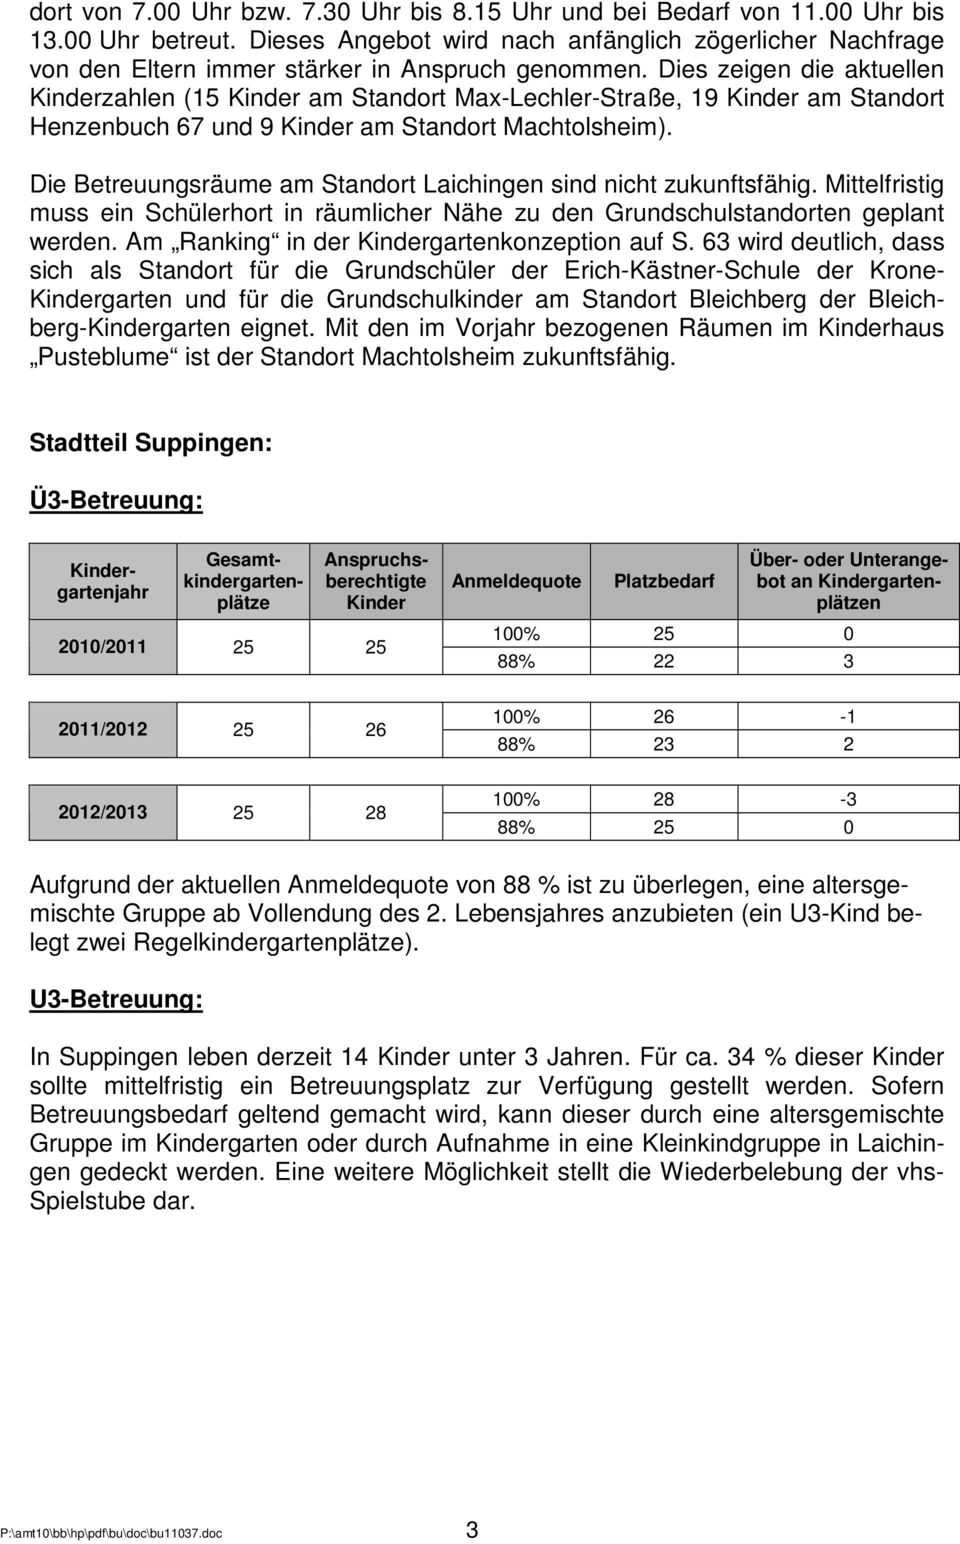 Dies zeigen die aktuellen zahlen (15 am Standort Max-Lechler-Straße, 19 am Standort Henzenbuch 67 und 9 am Standort Machtolsheim). Die Betreuungsräume am Standort Laichingen sind nicht zukunftsfähig.